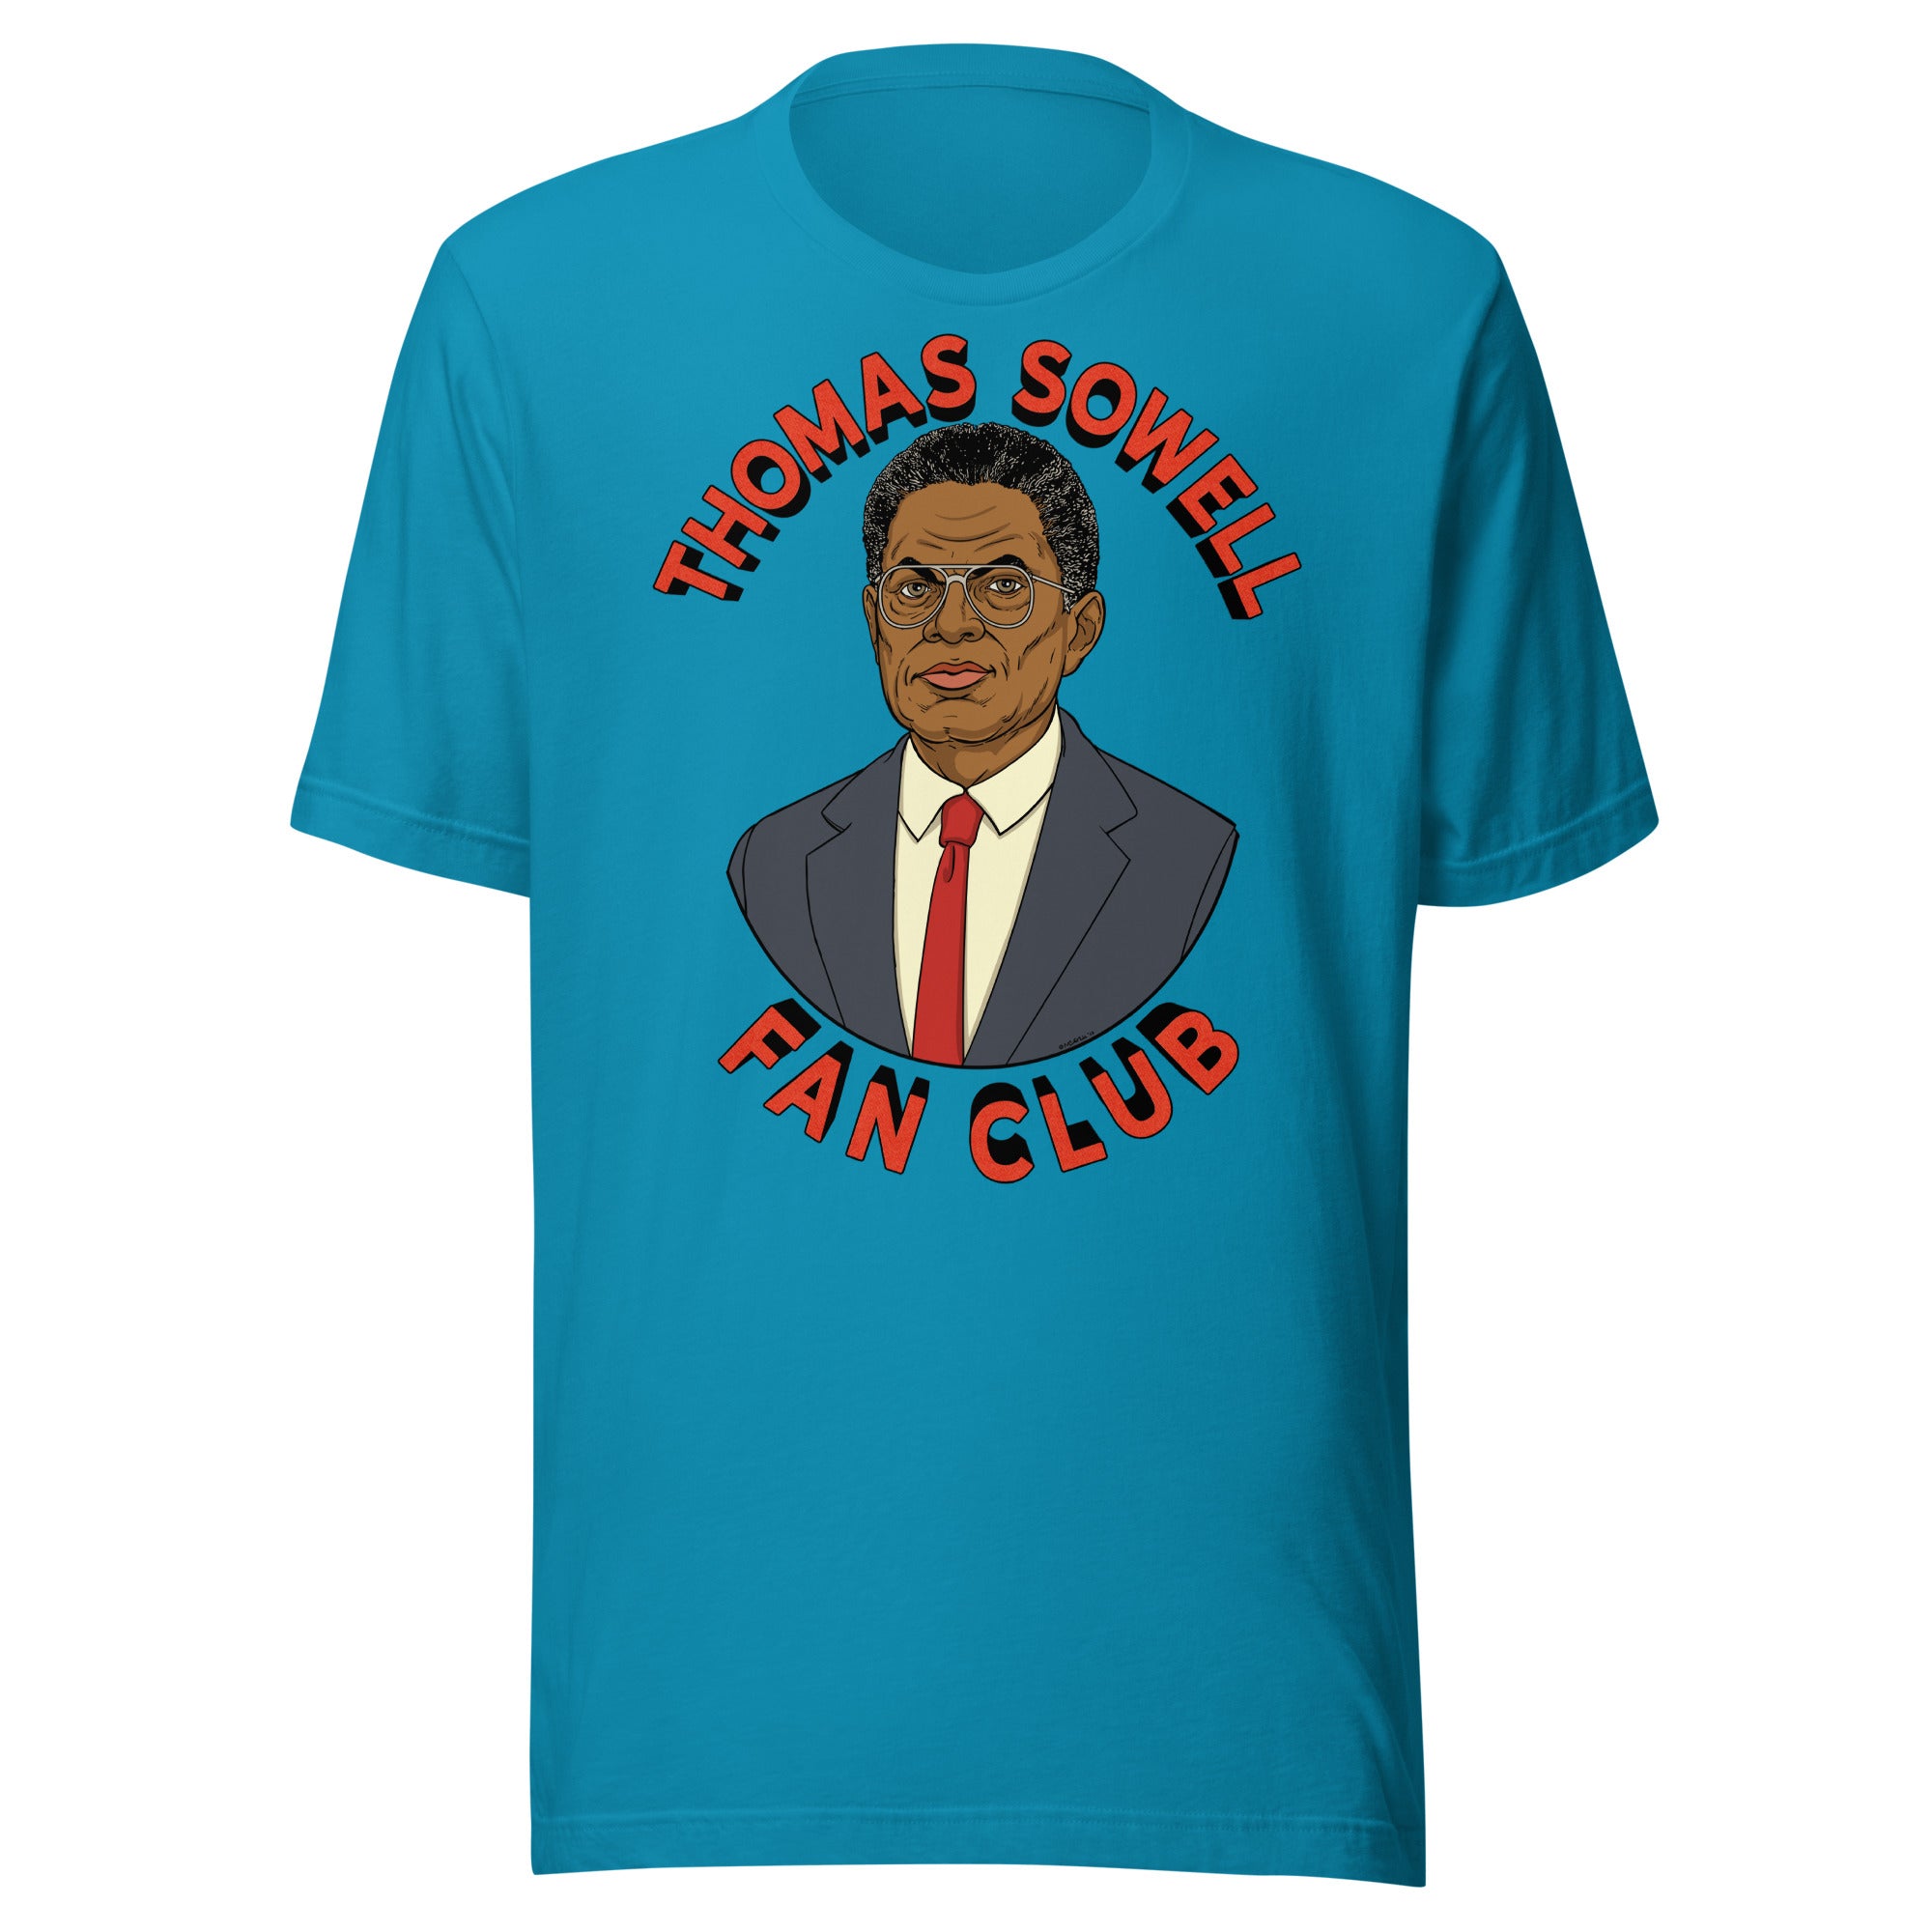 Thomas Sowell Fan Club Shirt